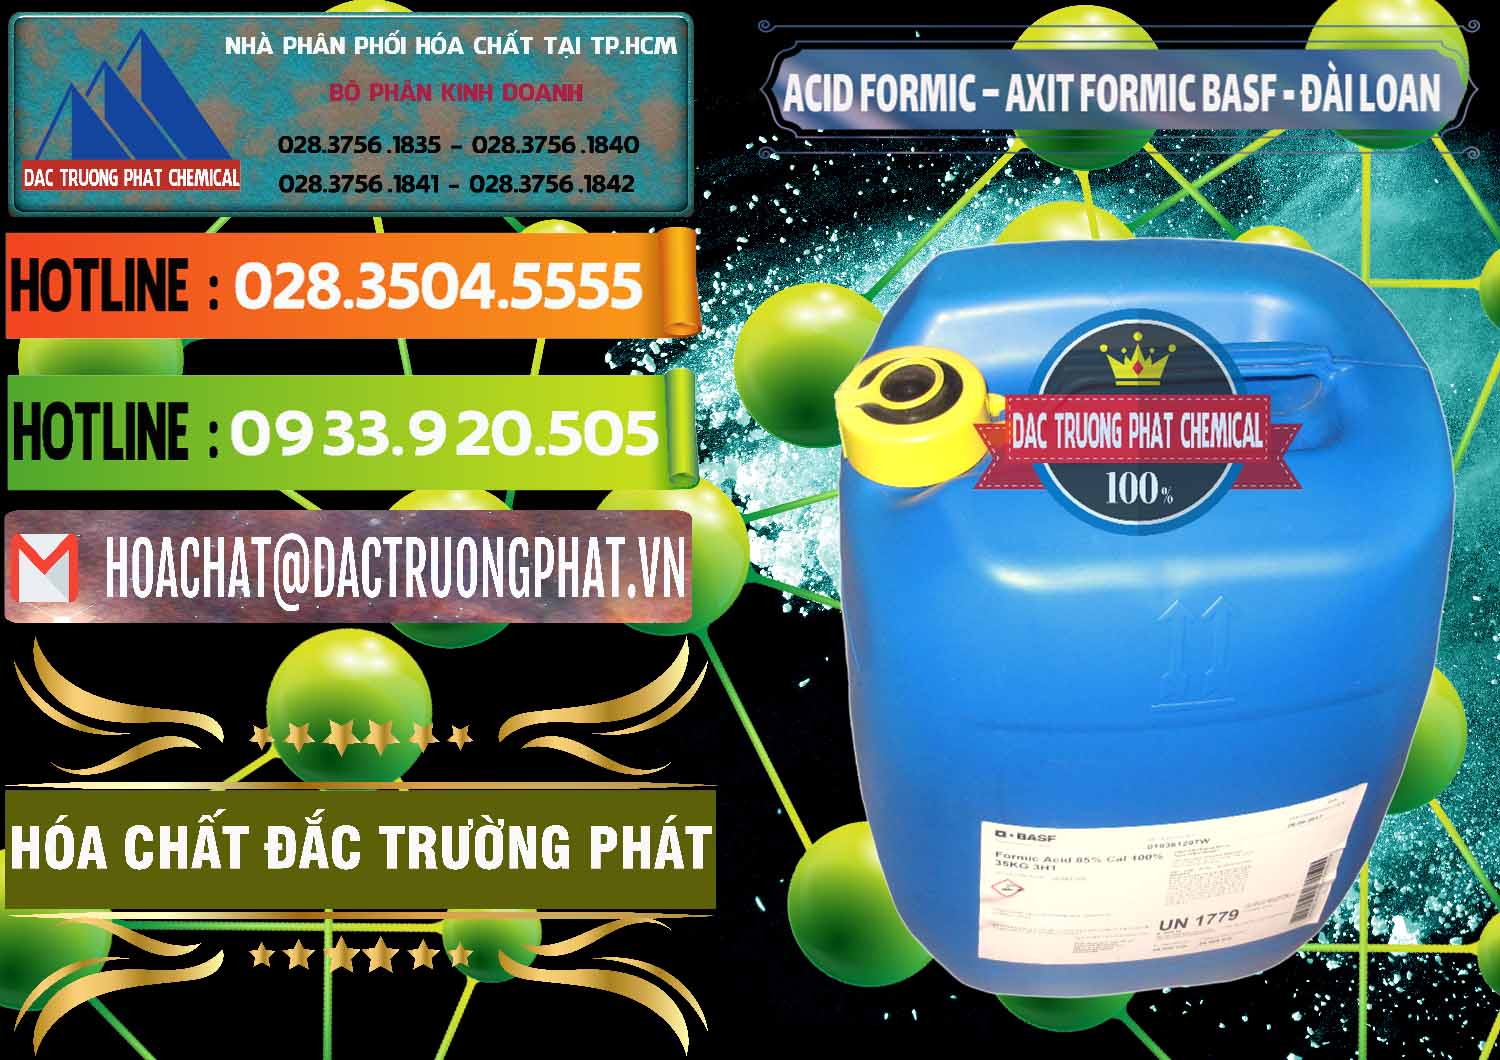 Nơi phân phối _ bán Acid Formic - Axit Formic 85% BASF Đài Loan Taiwan - 0027 - Nơi chuyên bán & phân phối hóa chất tại TP.HCM - cungcaphoachat.com.vn